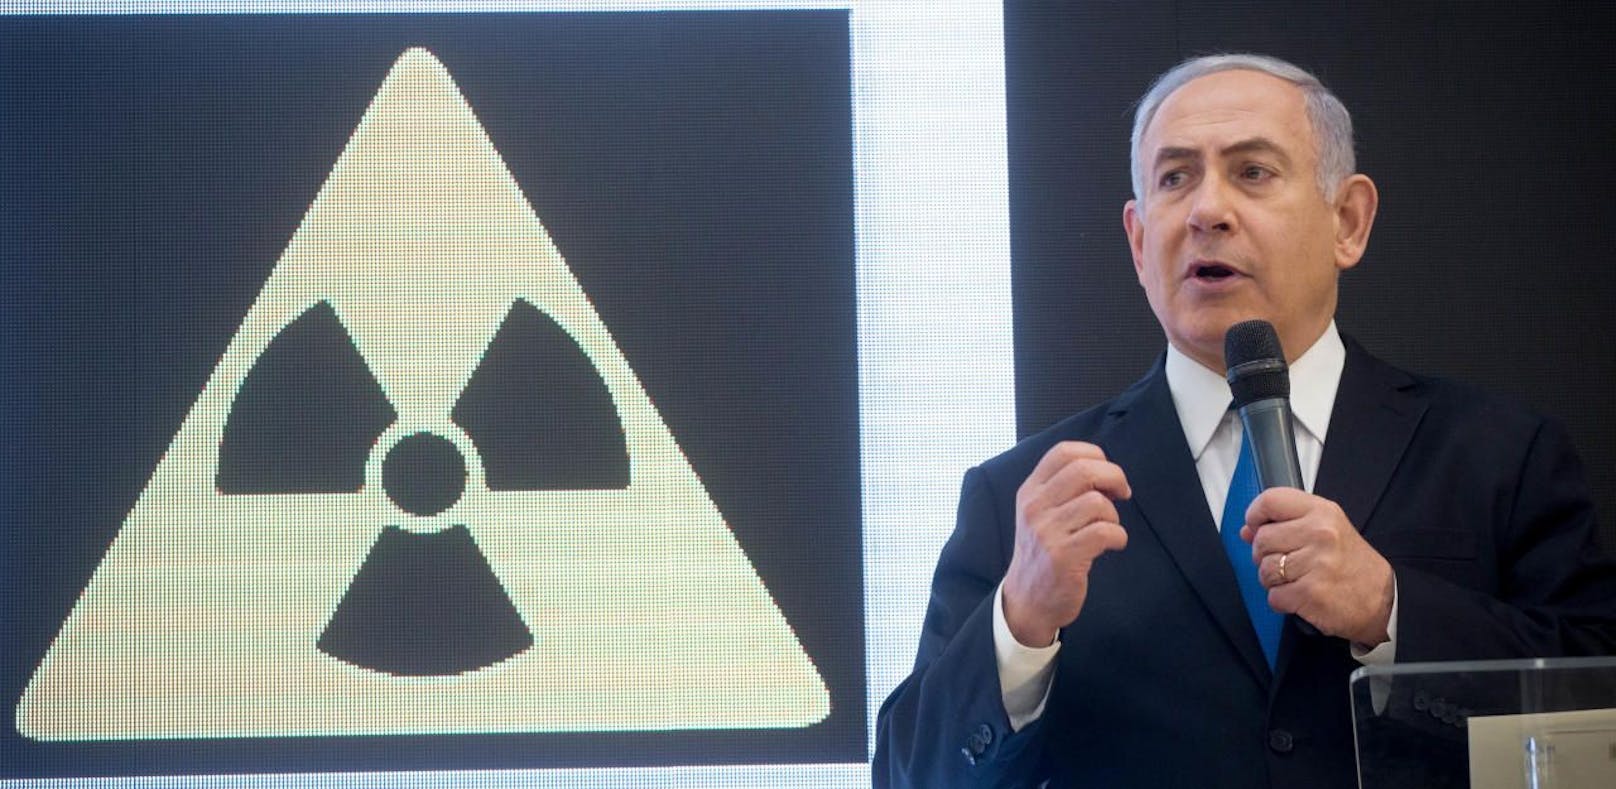 IAEA: Keine Hinweise auf Atomwaffen-Bau im Iran